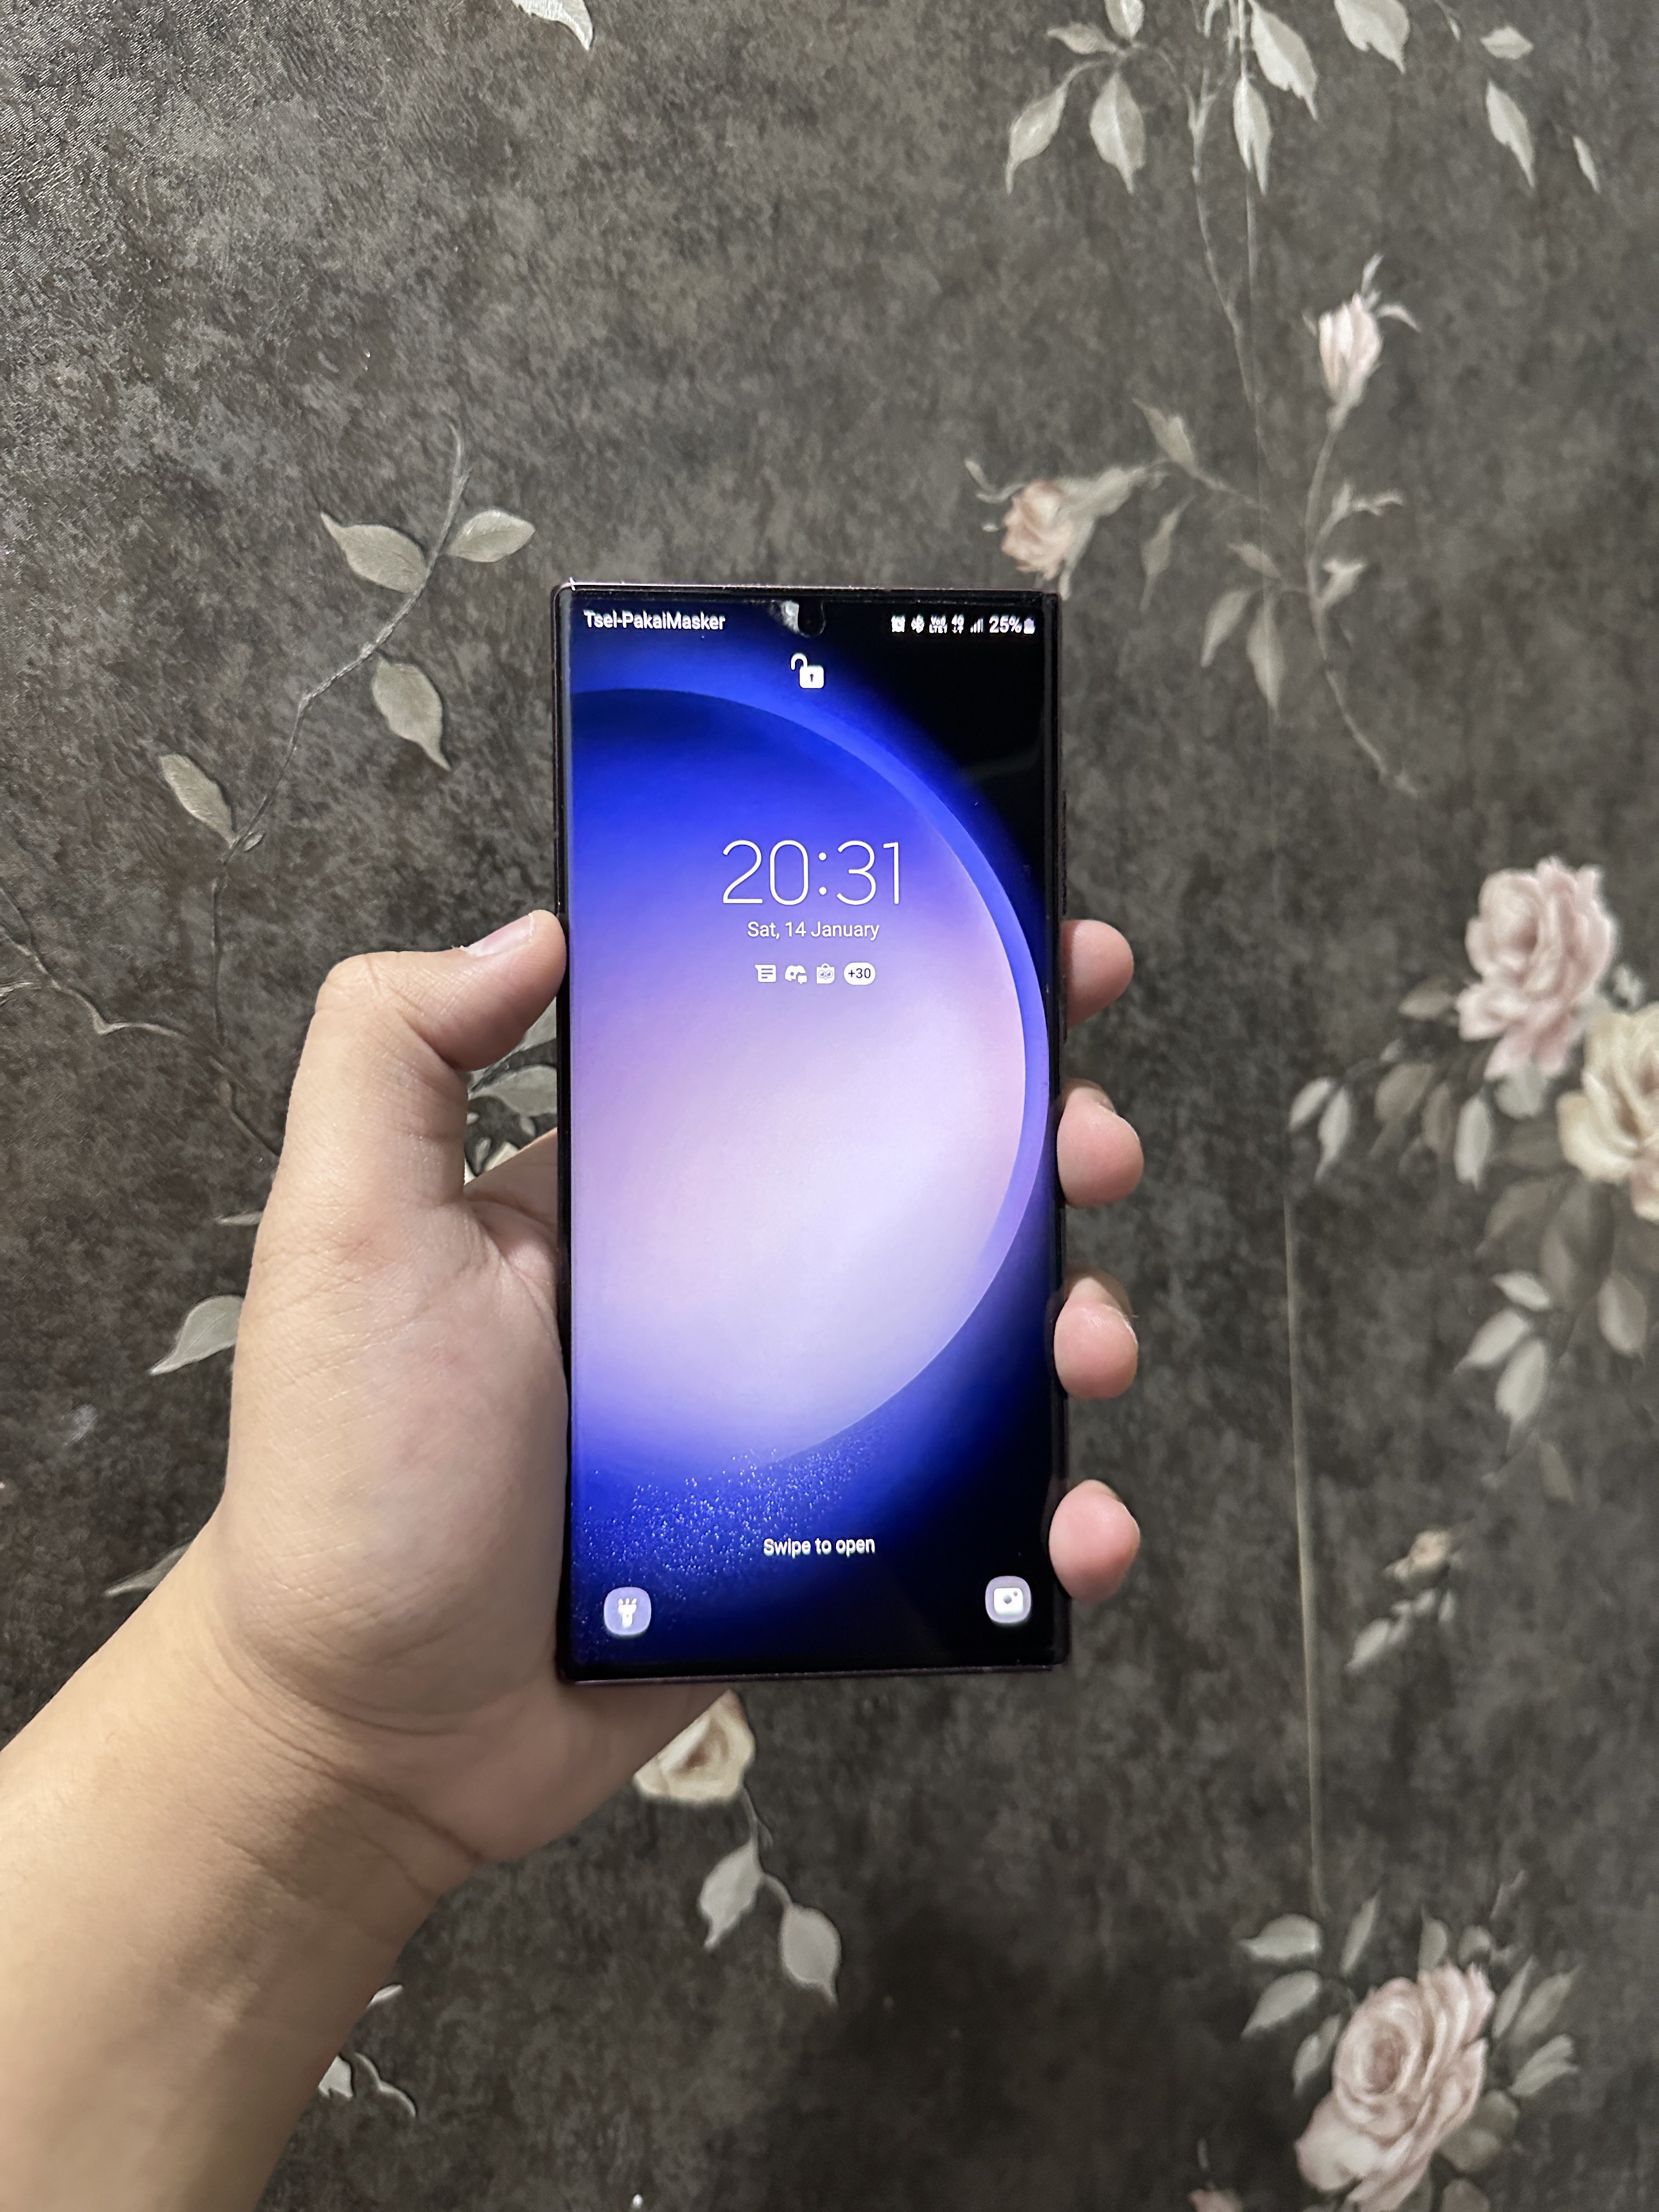 Galaxy S23 series wallpaper - Khám phá loạt hình nền Galaxy S23 đặc sắc với các thiết kế hấp dẫn, từ phong cách trừu tượng đến hiện đại và hoàn toàn mới. Tận hưởng trải nghiệm tuyệt vời với những bức hình nền này trên màn hình điện thoại của bạn.